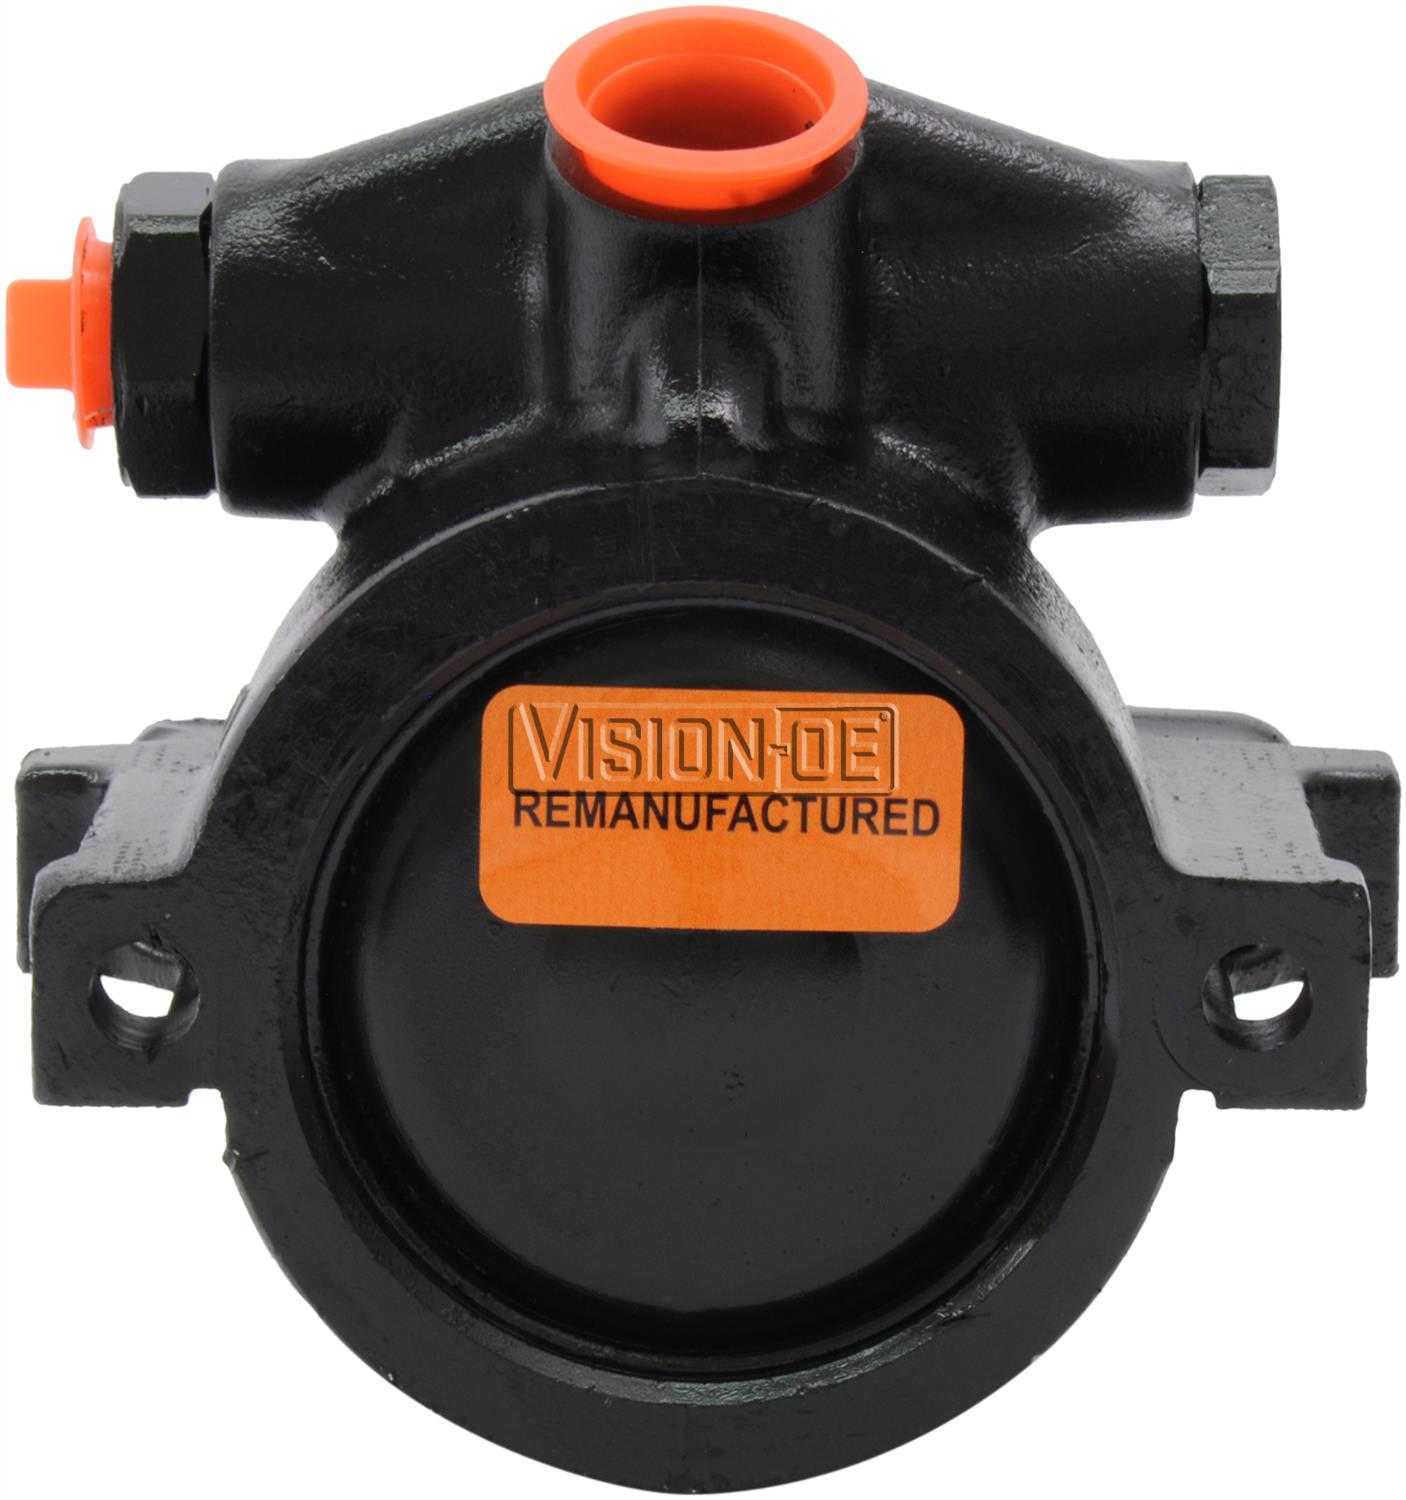 VISION-OE - Reman Power Steering Pump - VOE 734-0101